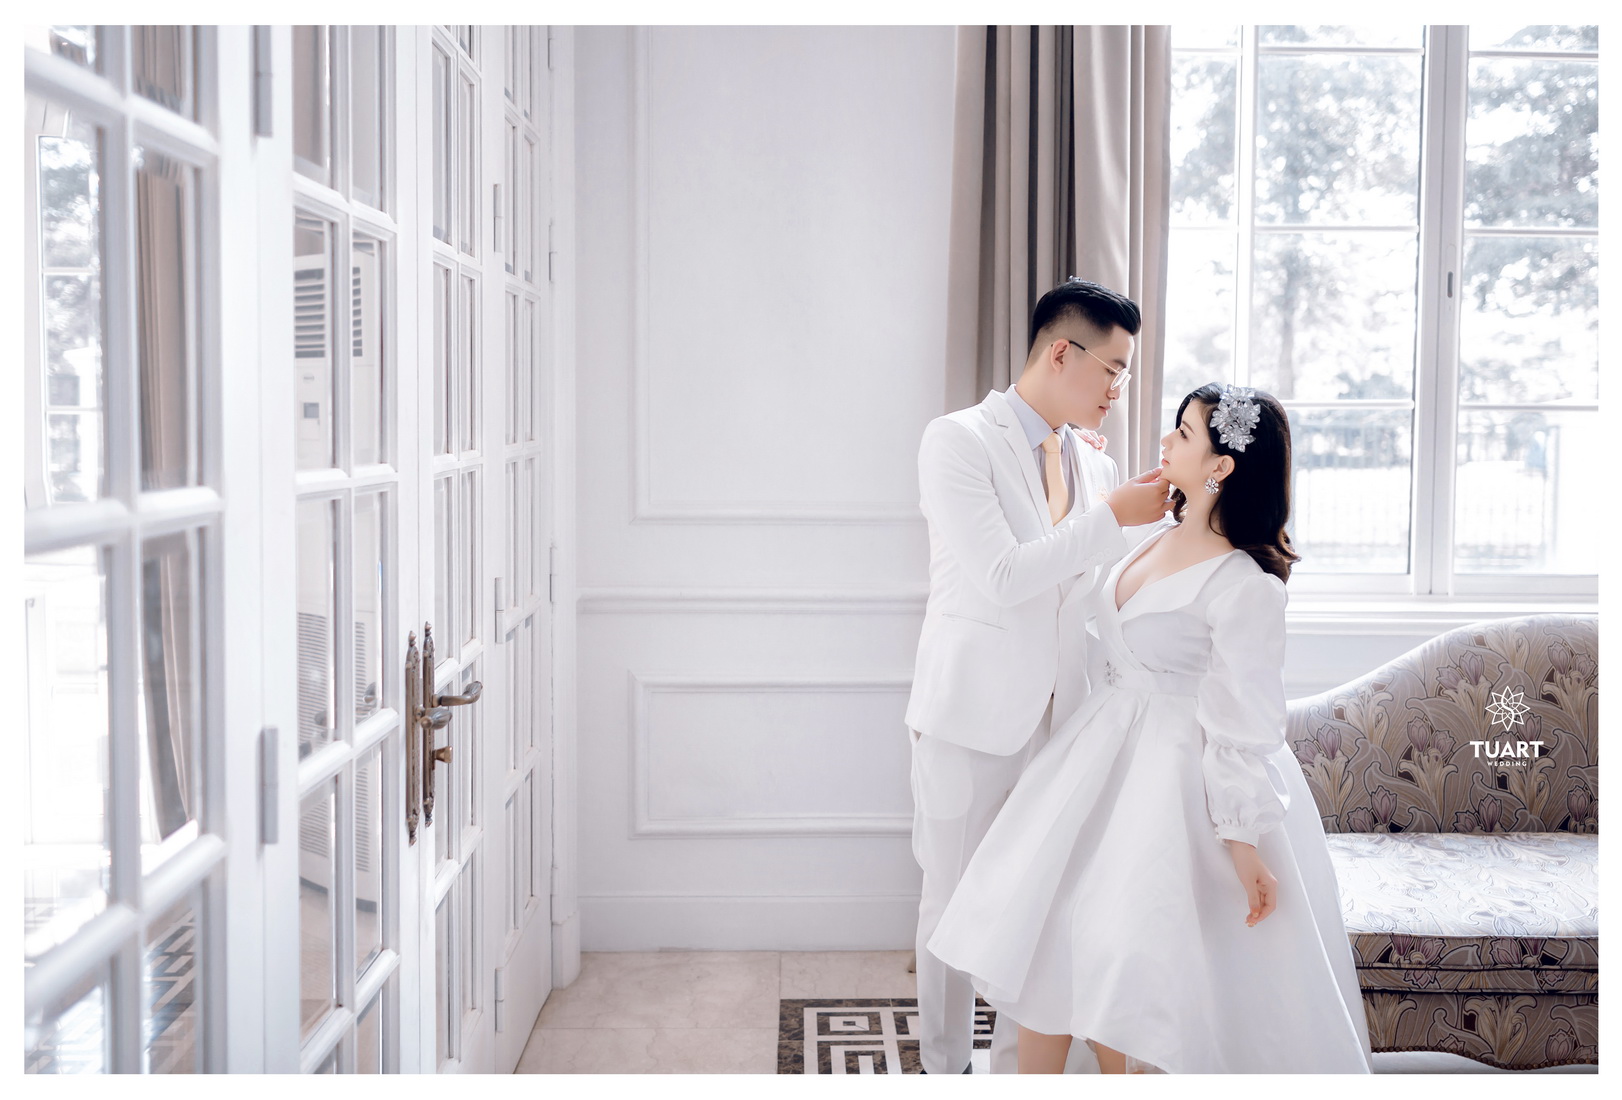 TuArts Wedding - Chụp ảnh cưới đẹp tại Hà Nội